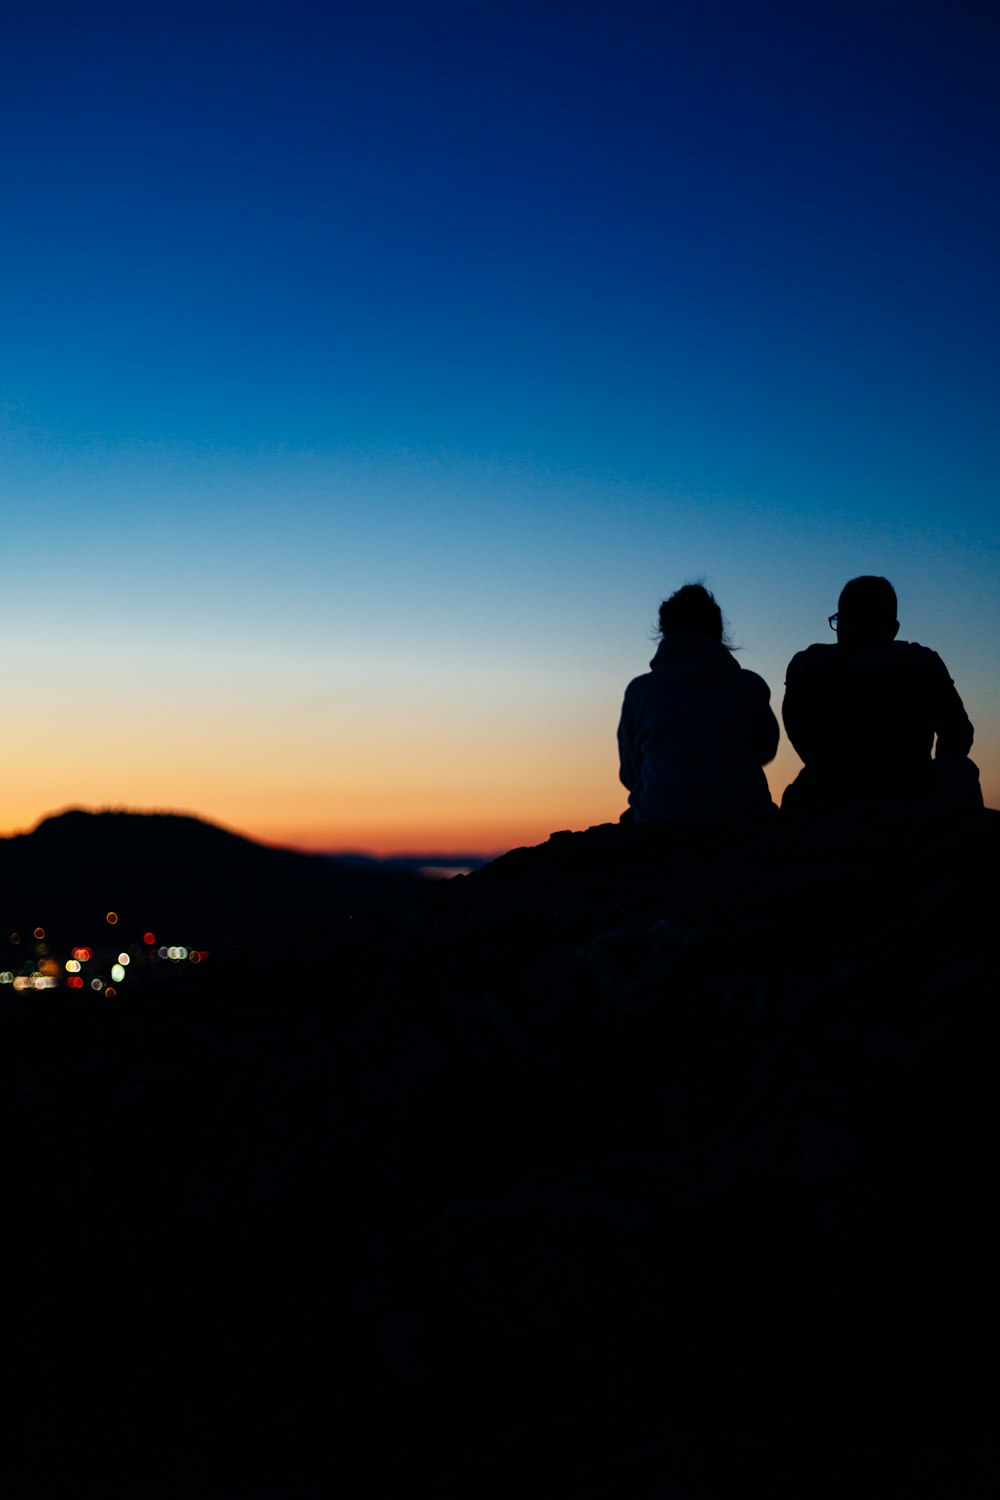 Dos personas de la silueta sentadas durante la puesta del sol